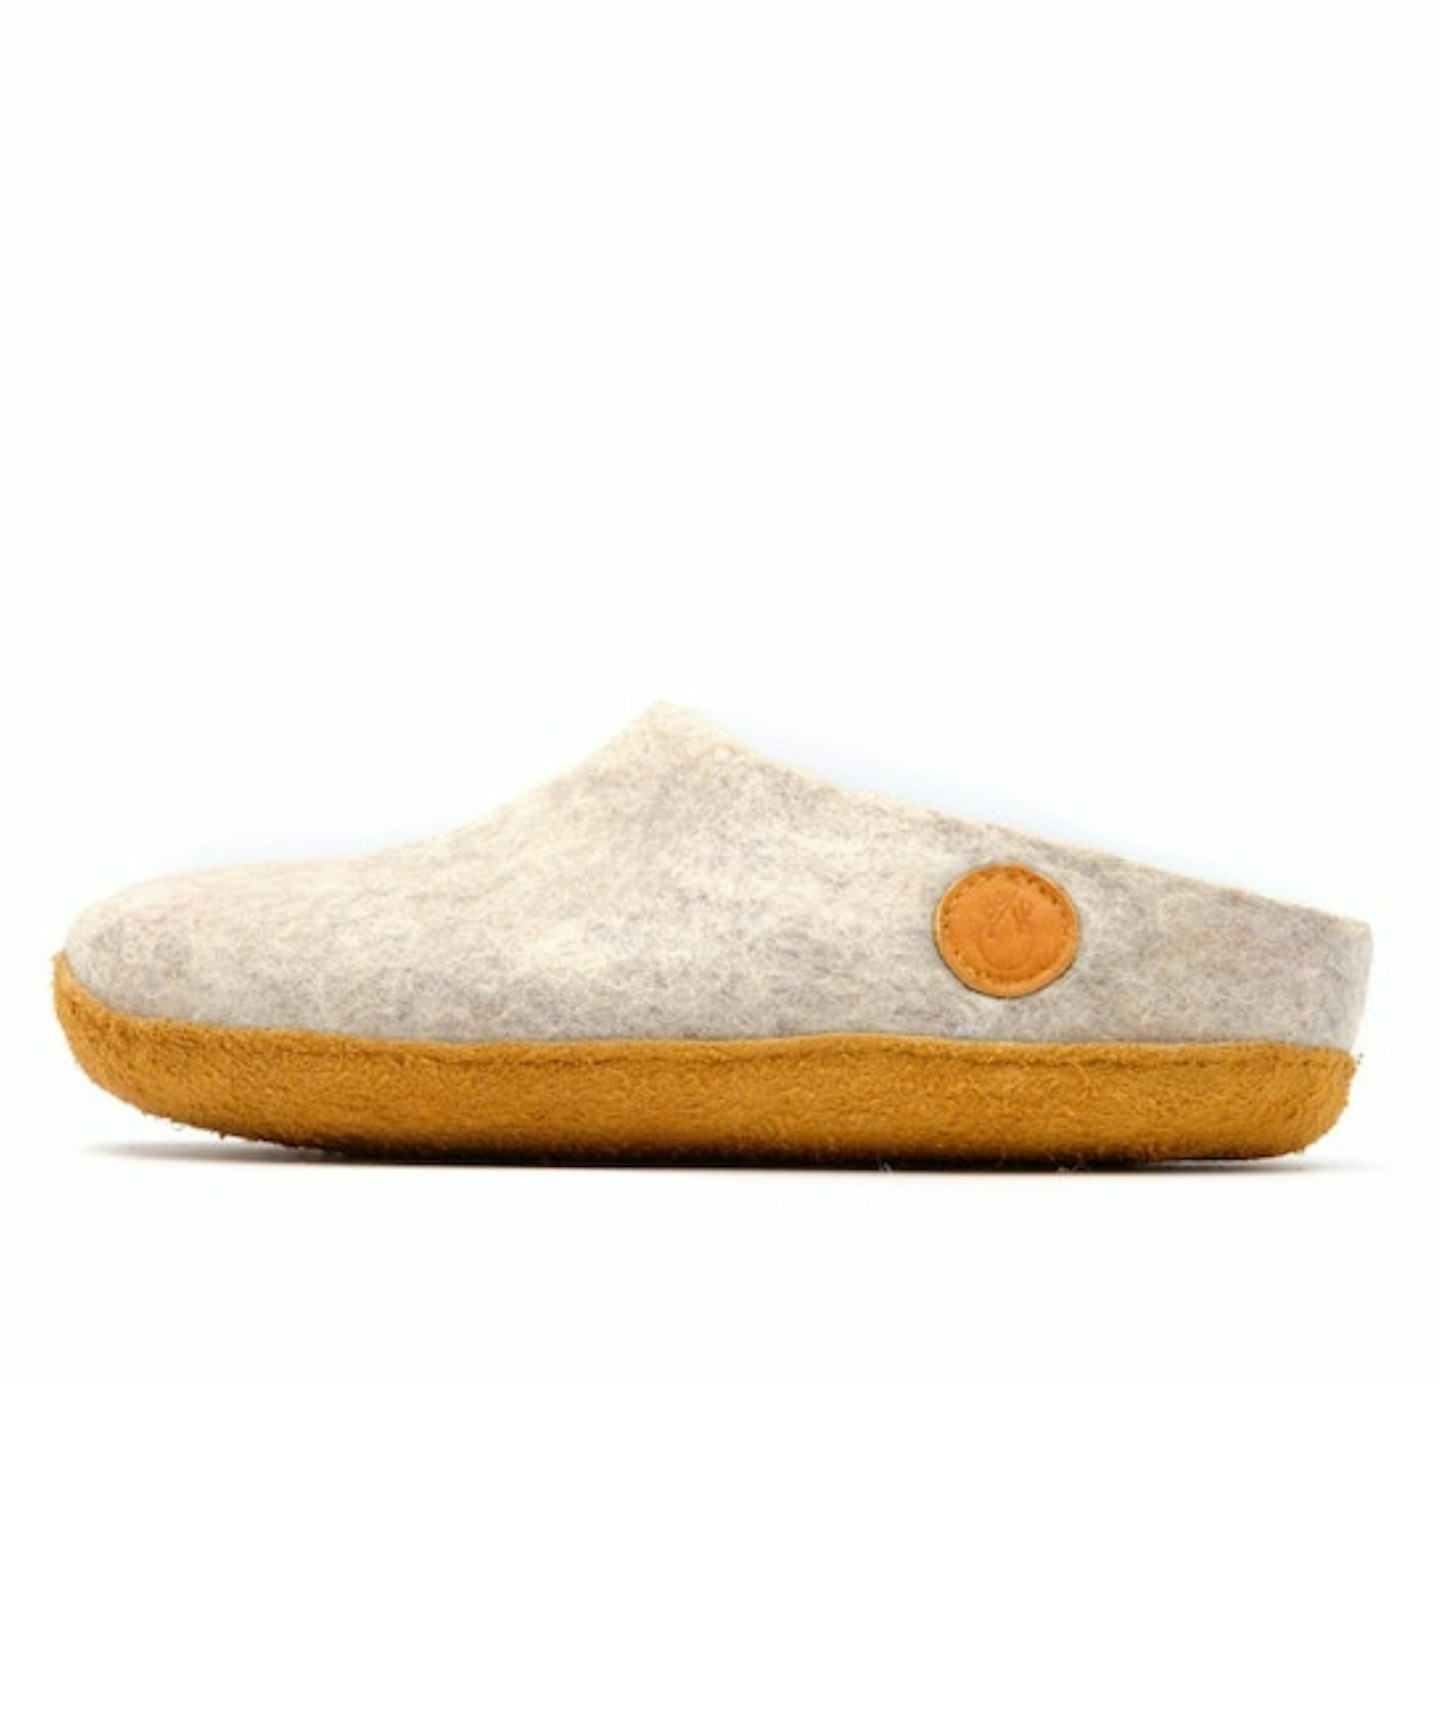 NAUSENI's luxury slippers